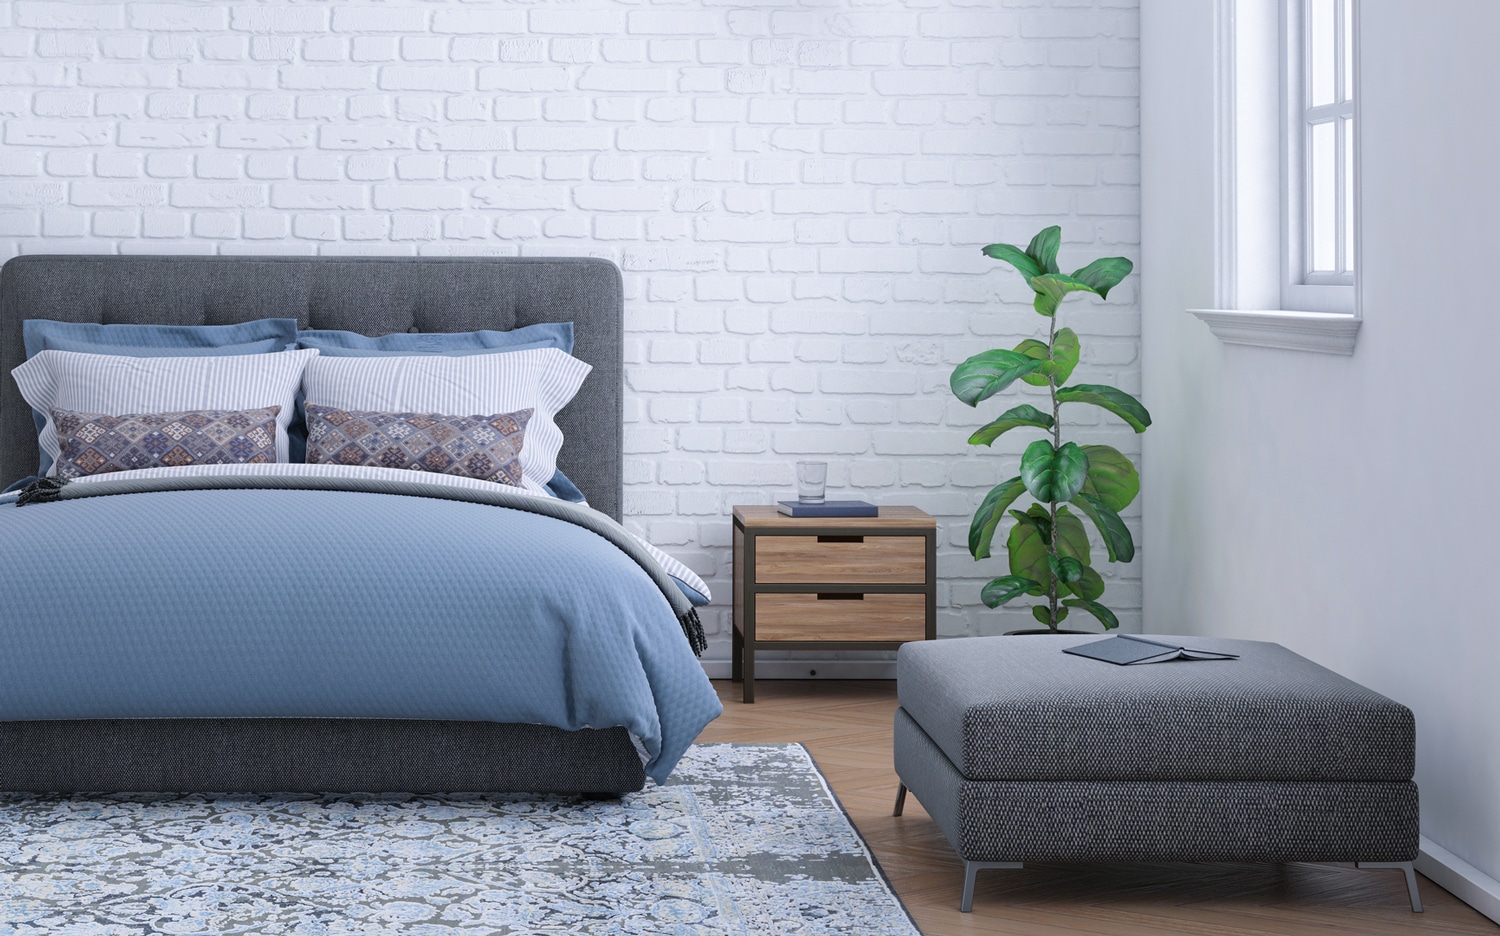 Comment choisir la bonne base de lit : Les critères à considérer pour acheter une base de lit parfaite pour vous